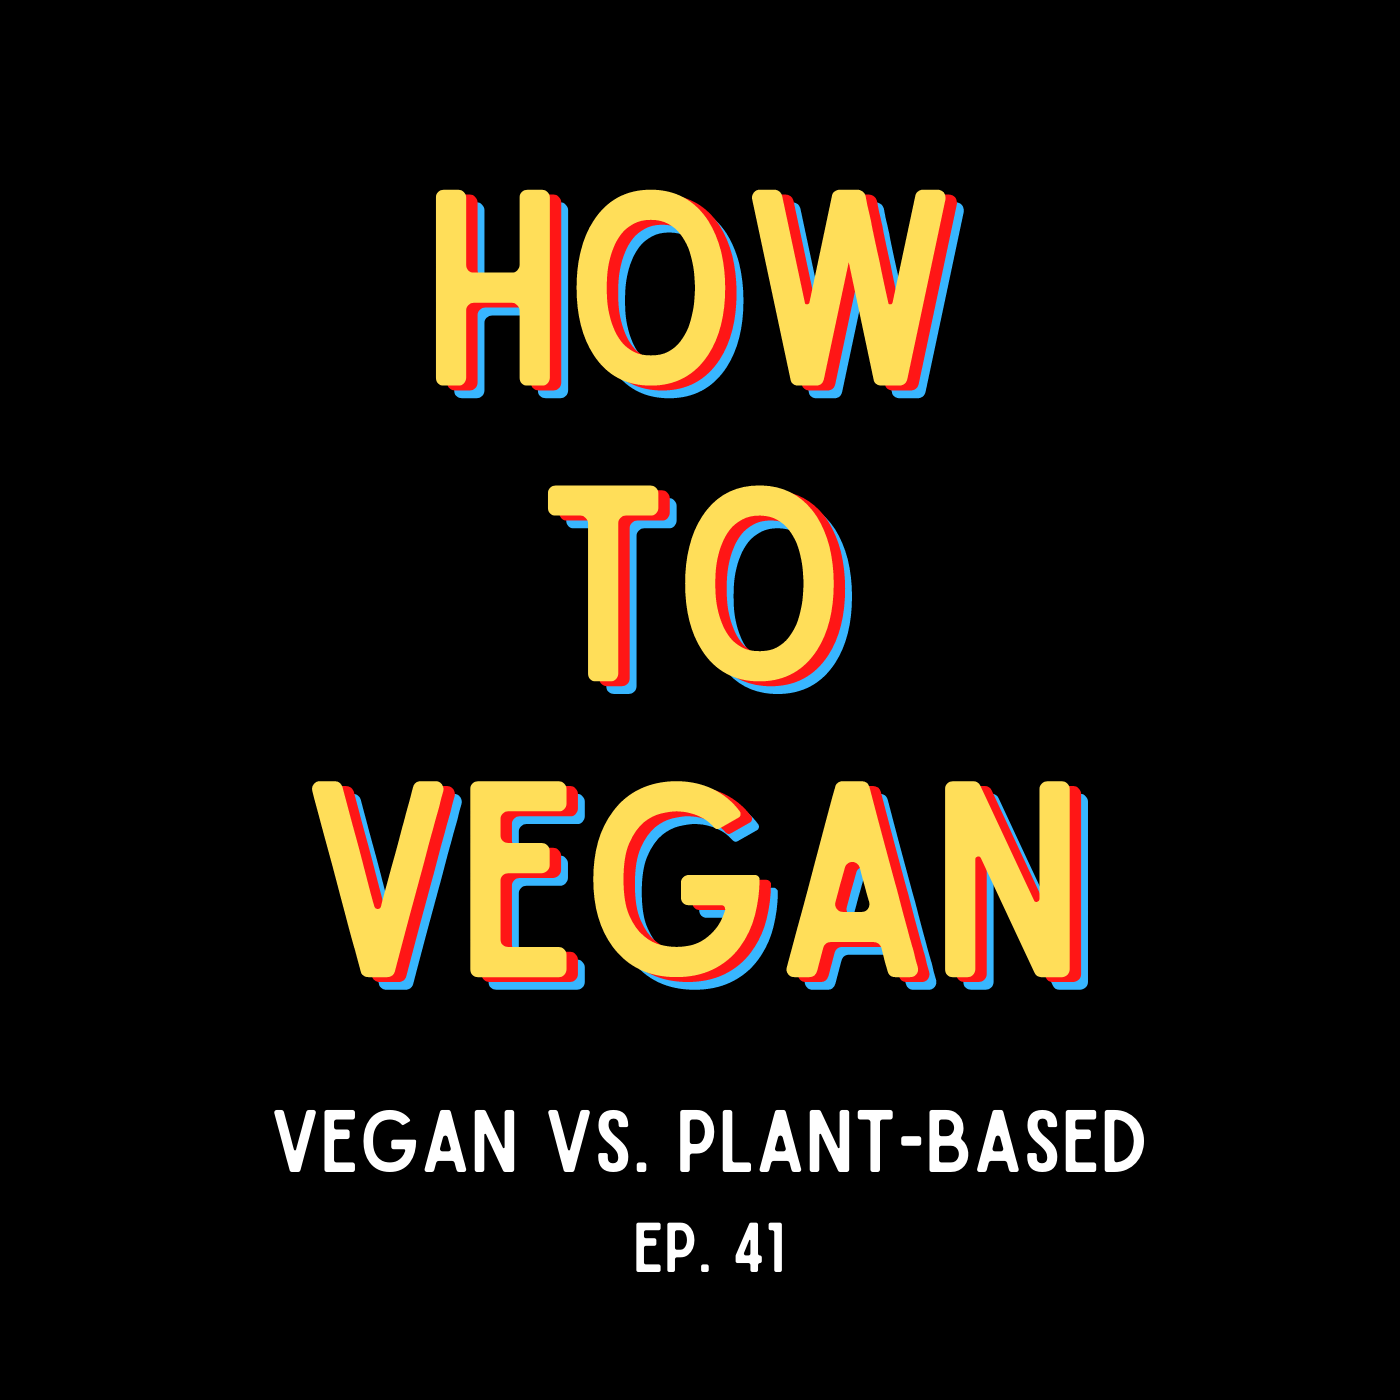 Vegan vs. Plant-Based